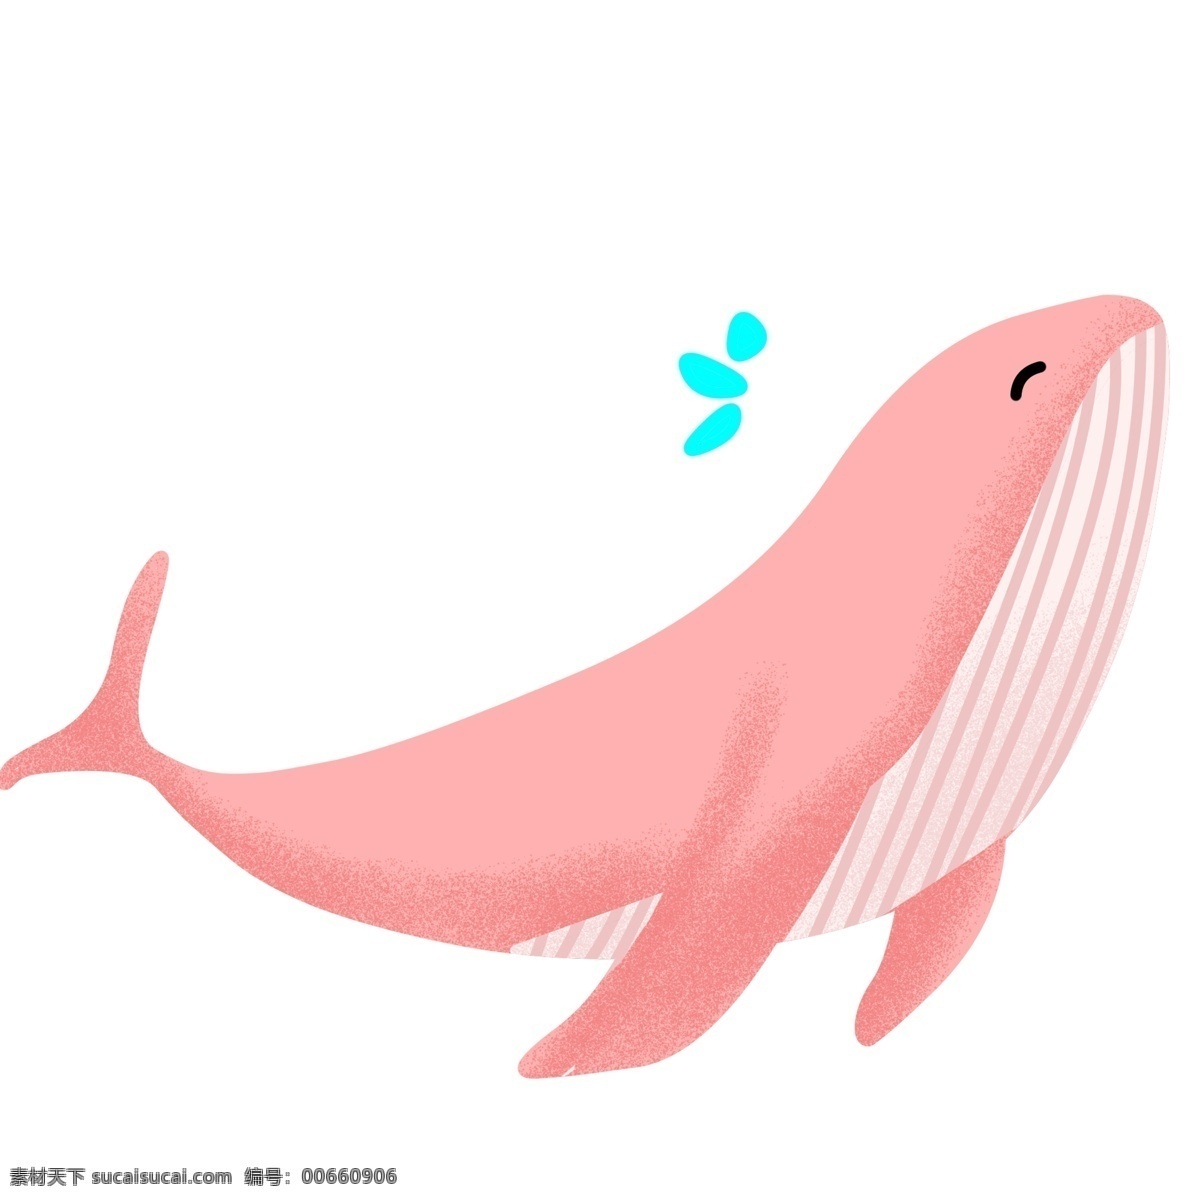 粉色 卡通 鲸鱼 插画 卡通鲸鱼 野生动物 大自然 喷水的鲸鱼 动物 粉色鲸鱼 游玩的鲸鱼 可爱